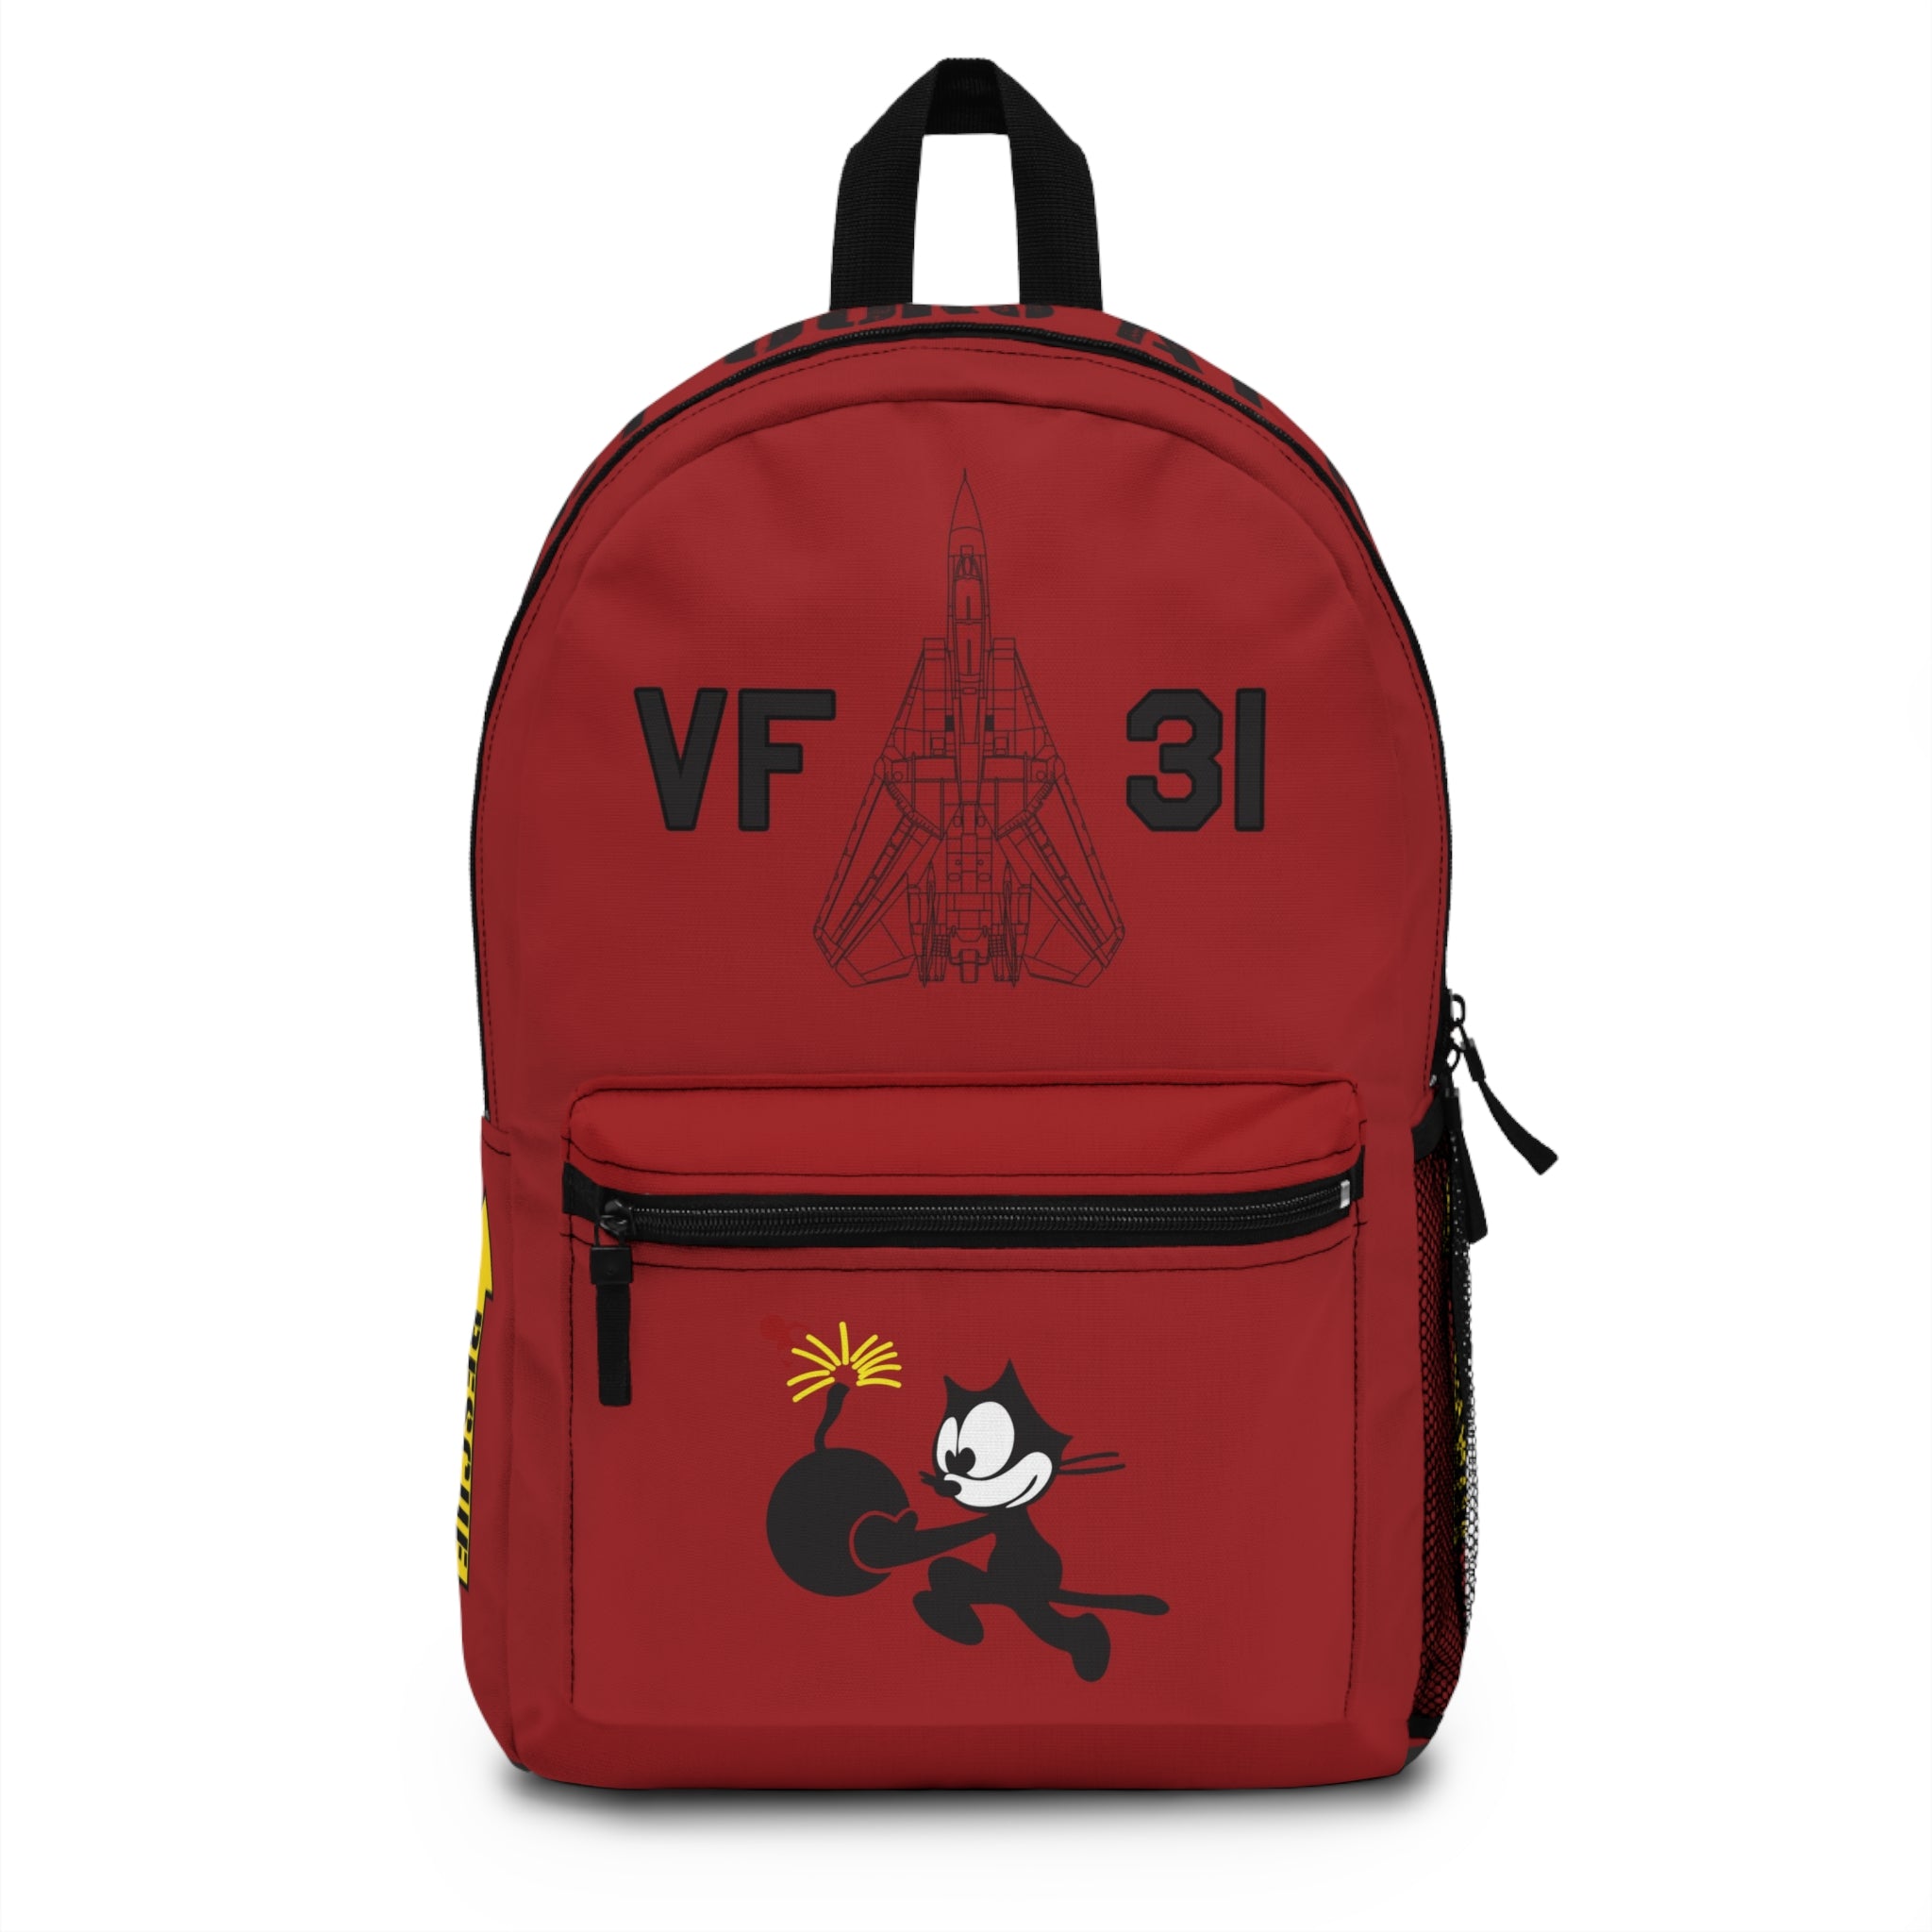 VF-31 "Tomcatters" Backpack - I Love a Hangar